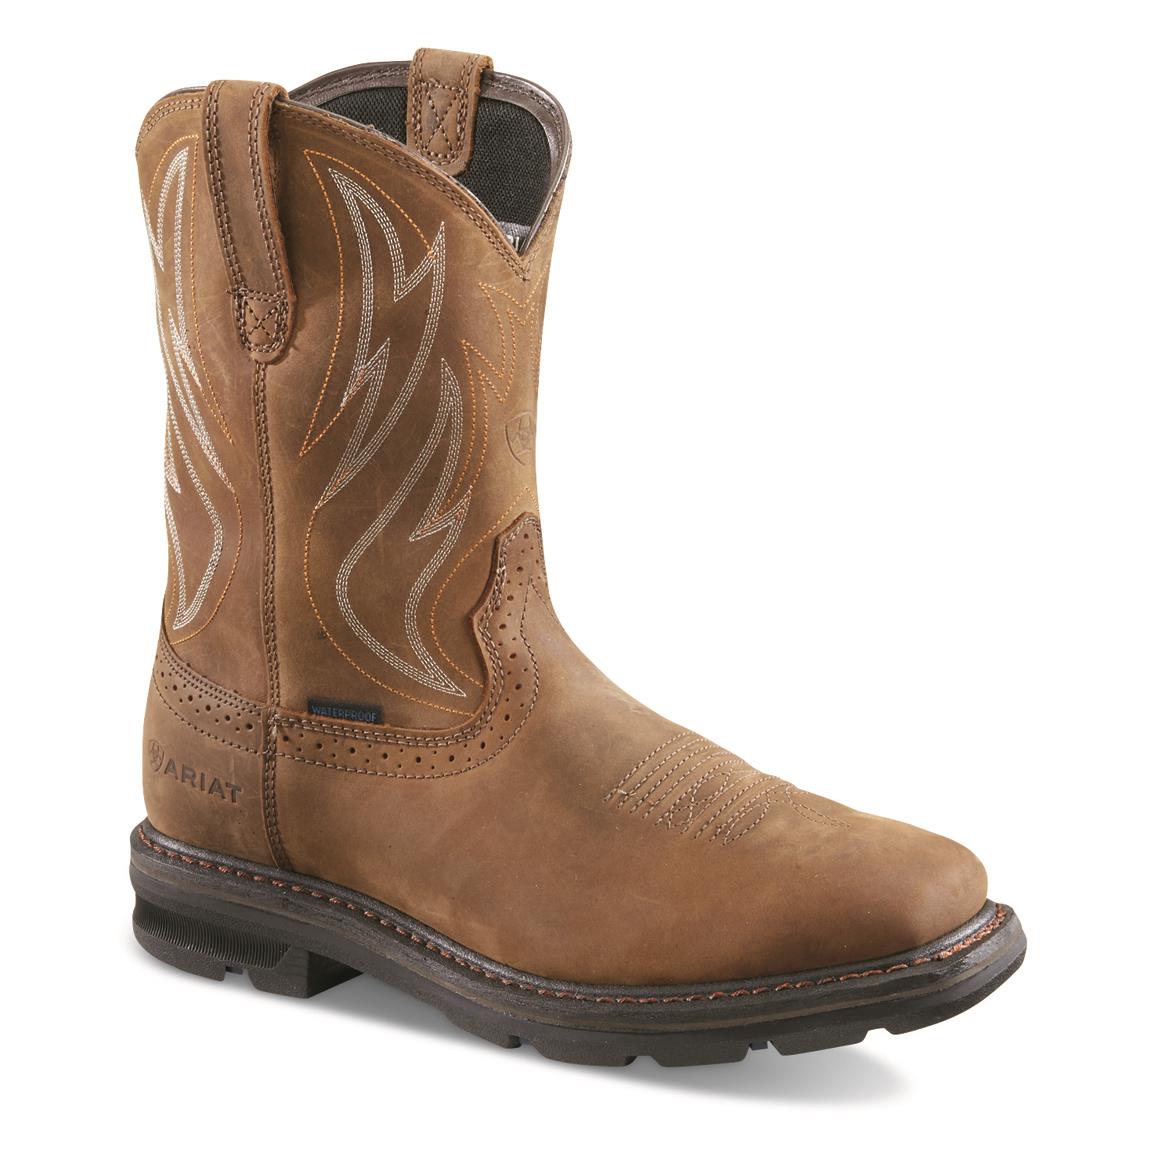 Ariat Men's Sierra Shock Shield H20 Waterproof Work Boots, Distressed Brown